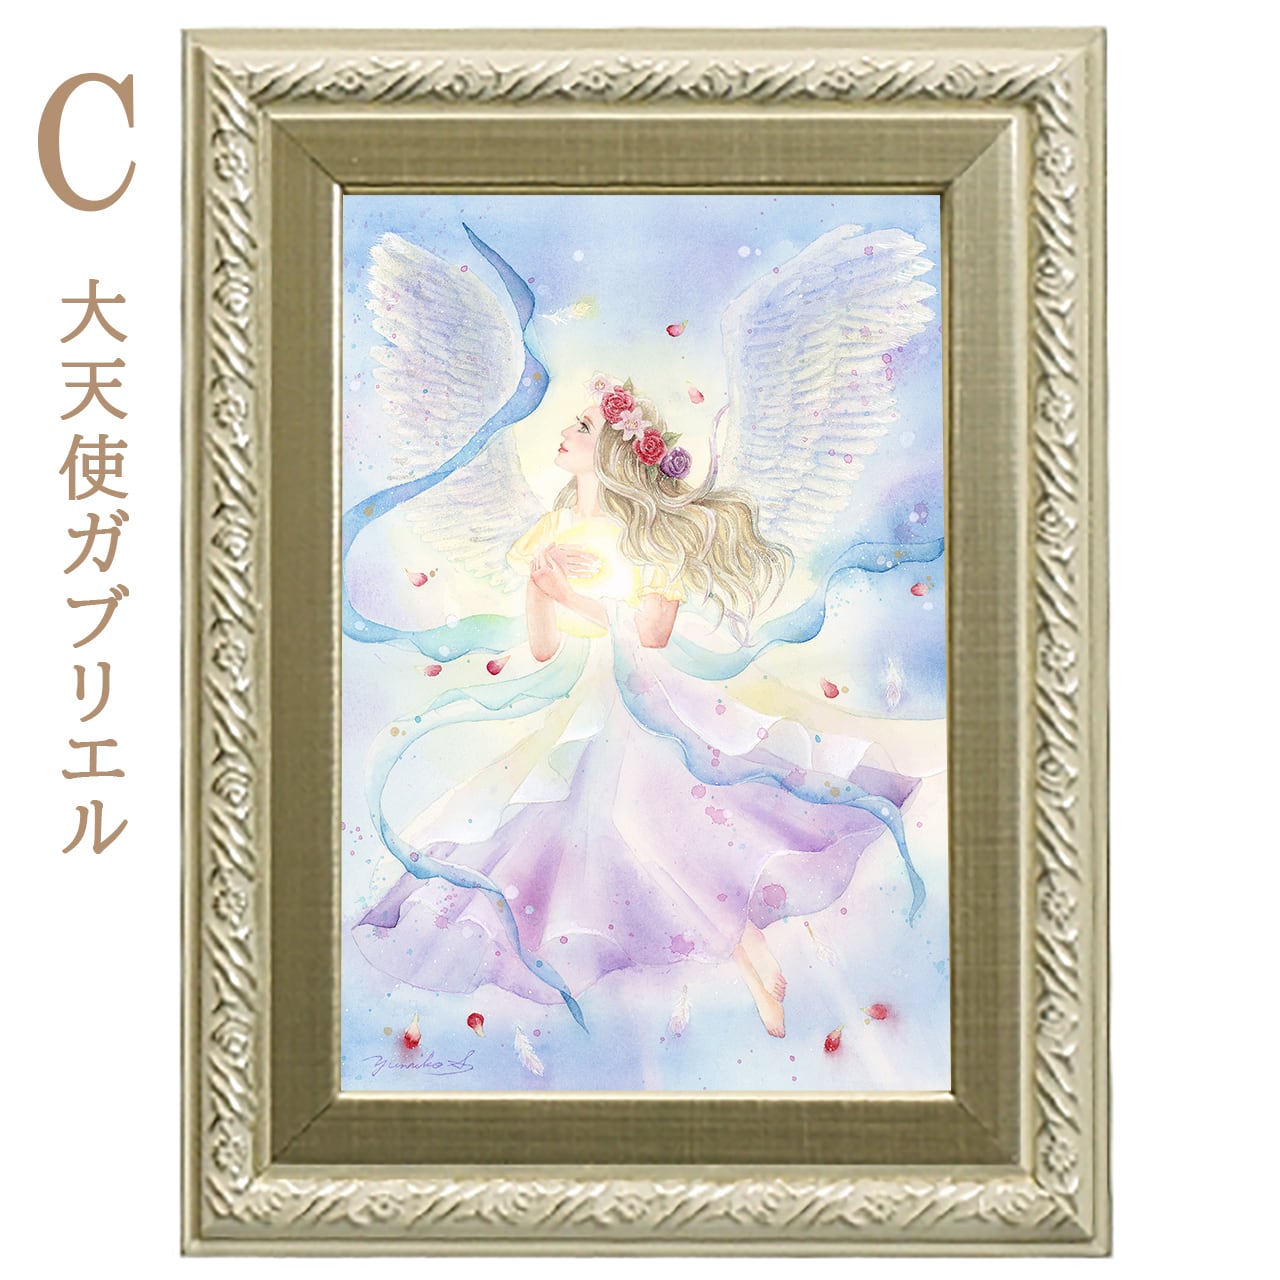 複製画 Sサイズ 女神や天使の複製画 | 幸せの水彩画 ヒーリングアート